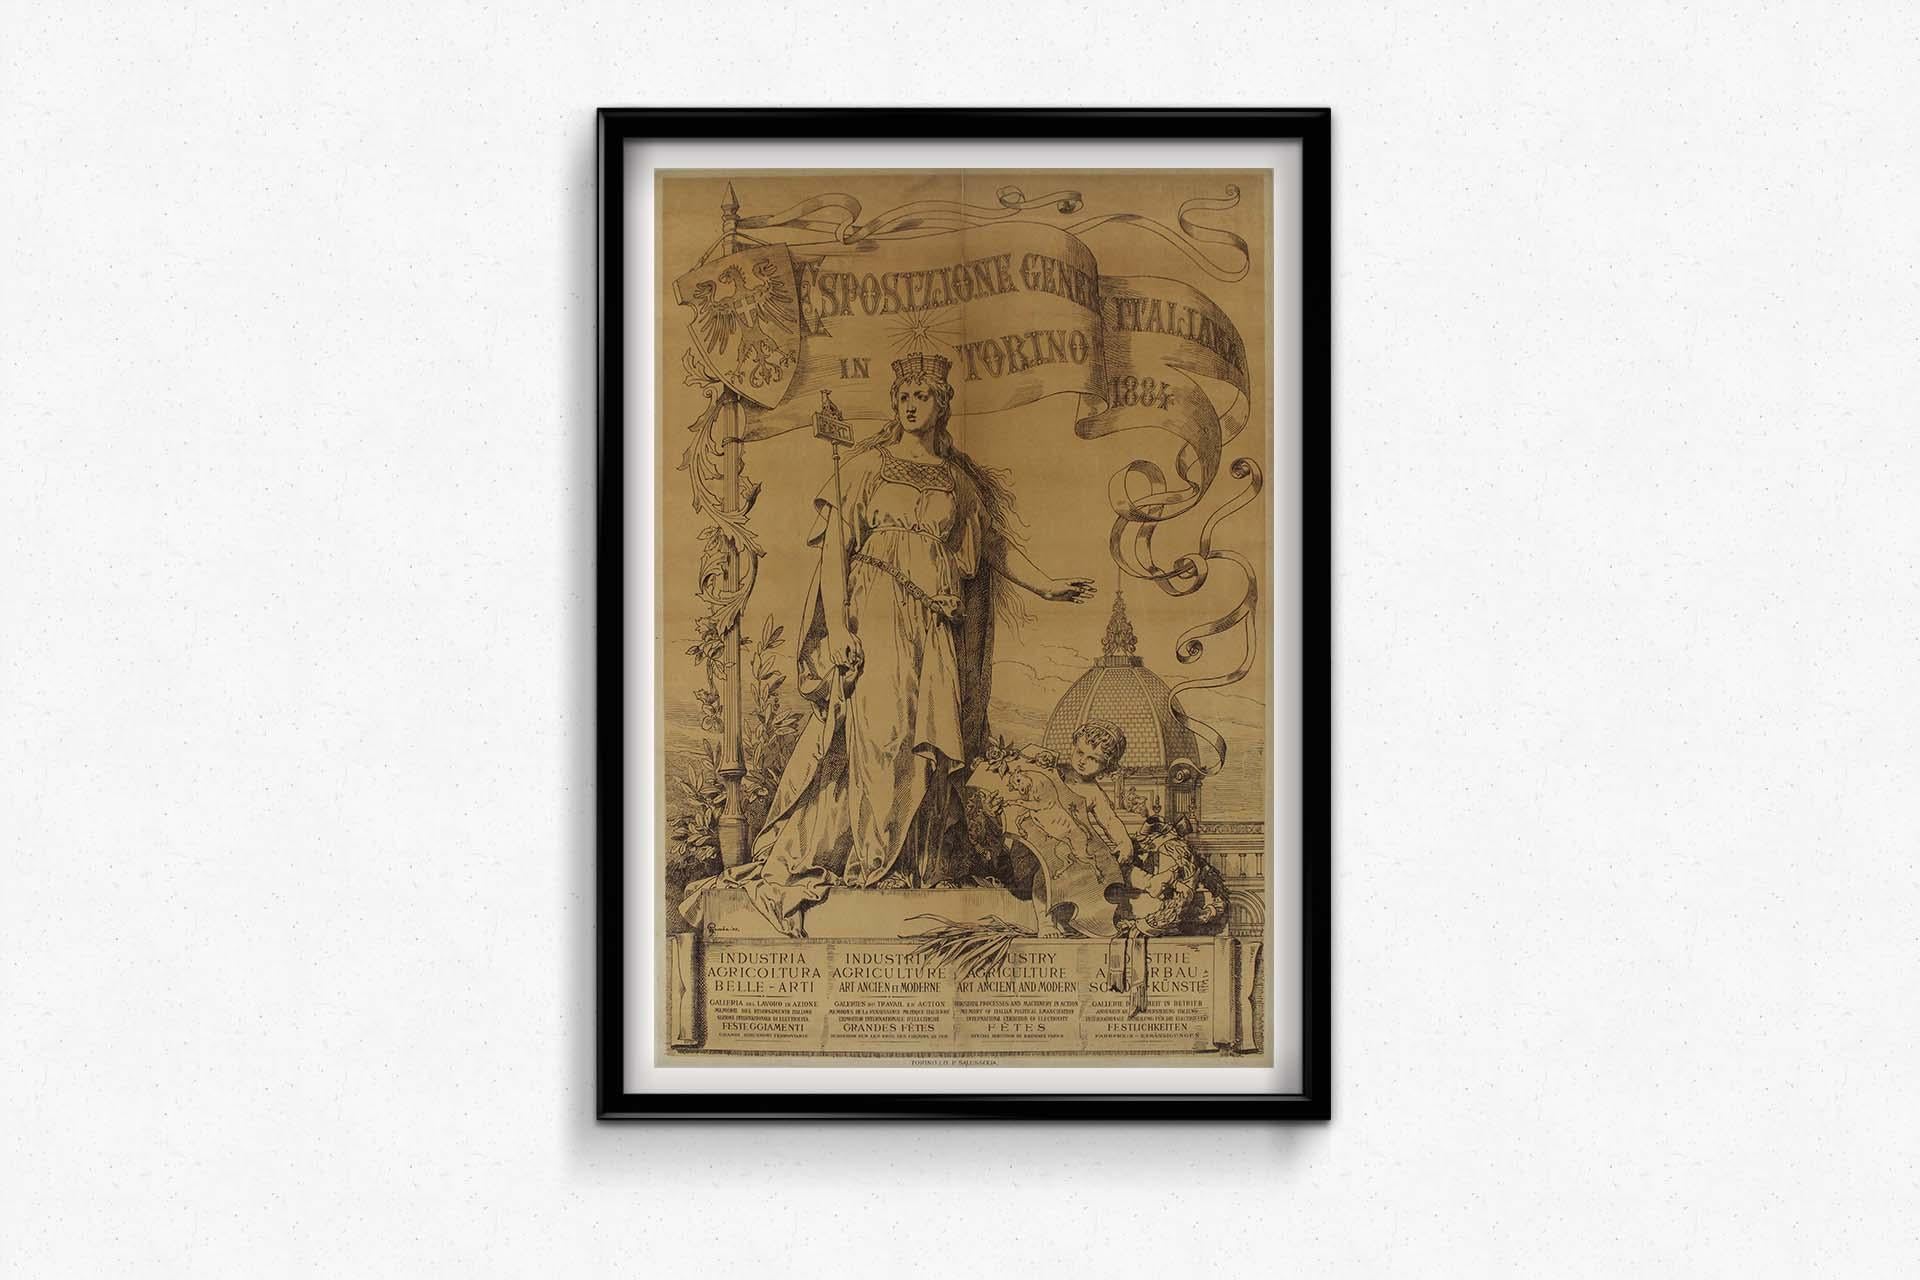 Das Originalplakat für die Esposizione Generale Italiana (Allgemeine Italienische Ausstellung) in Turin wurde 1884 von dem erfahrenen Künstler Francesco Gamba geschaffen und ist ein bemerkenswertes Kunstwerk, das die kulturellen und industriellen